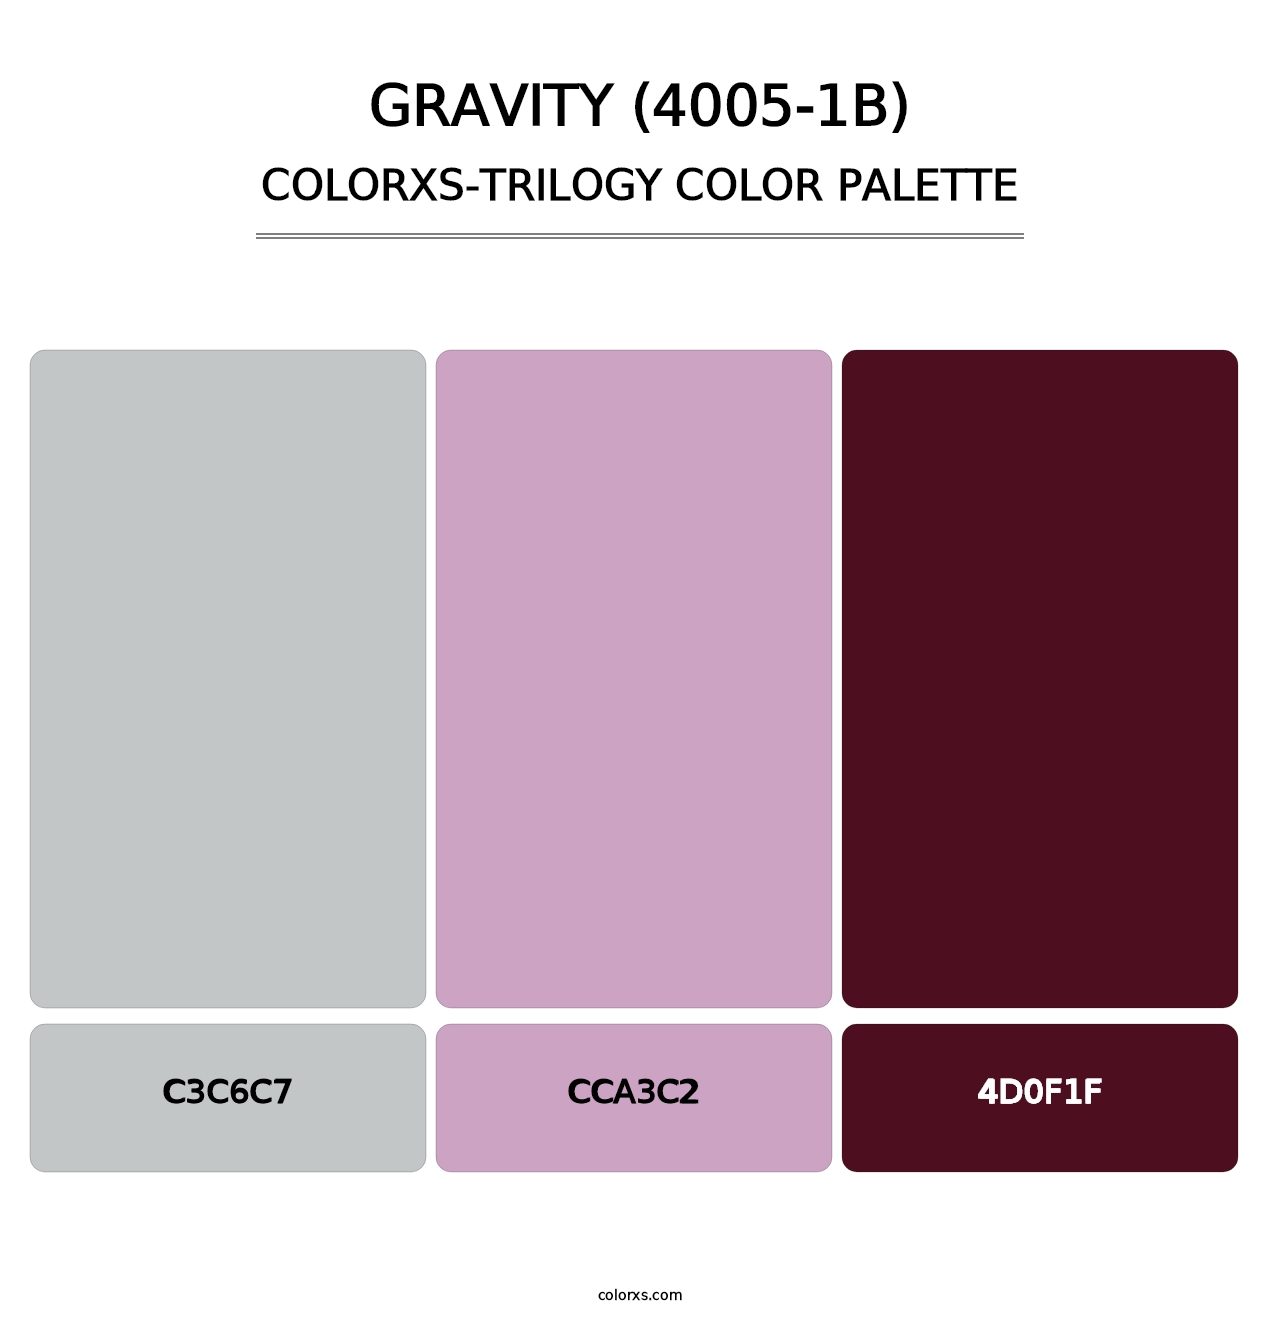 Gravity (4005-1B) - Colorxs Trilogy Palette